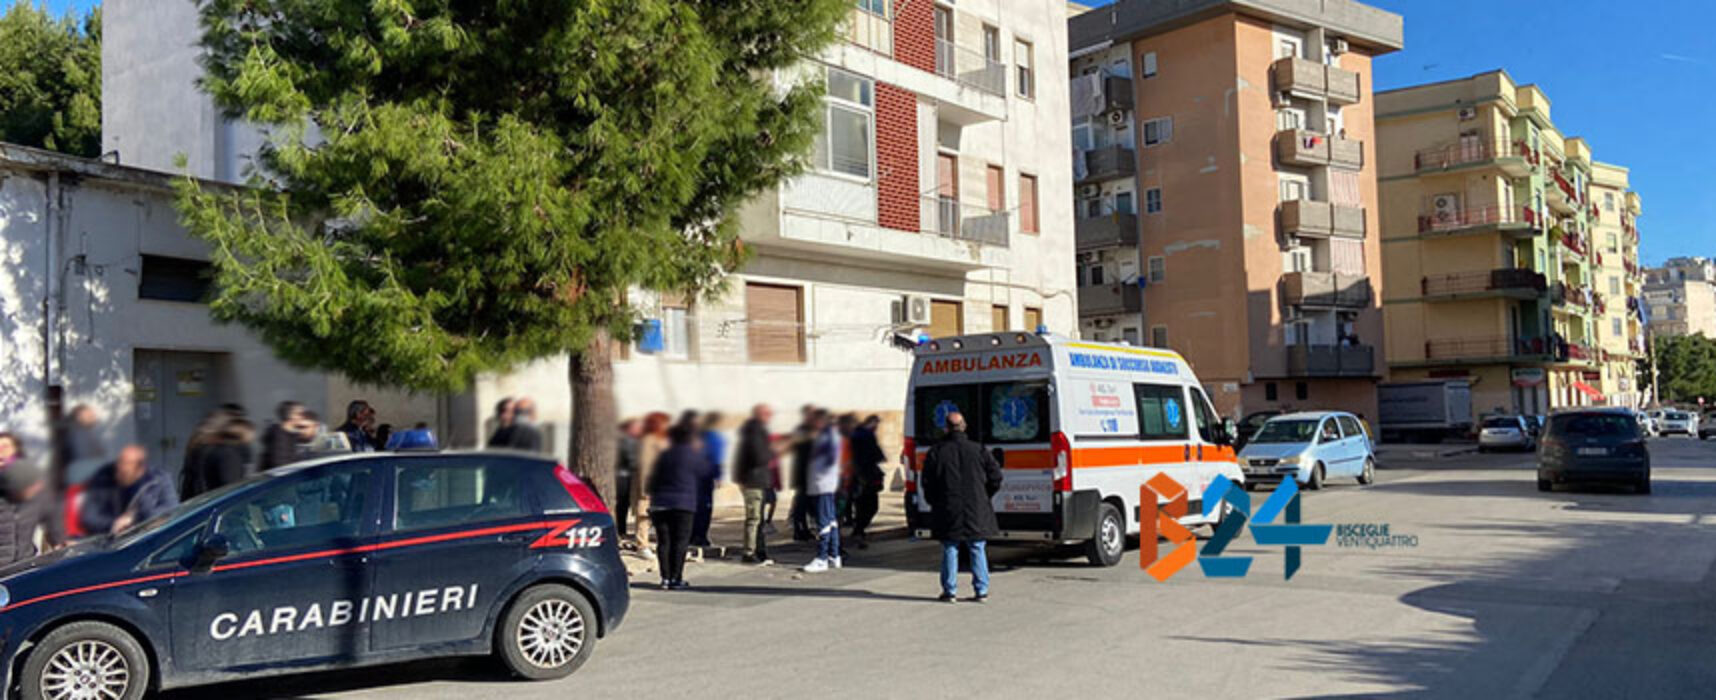 Anziana donna cade dal piano rialzato nel quartiere San Pietro, trasportata in ospedale